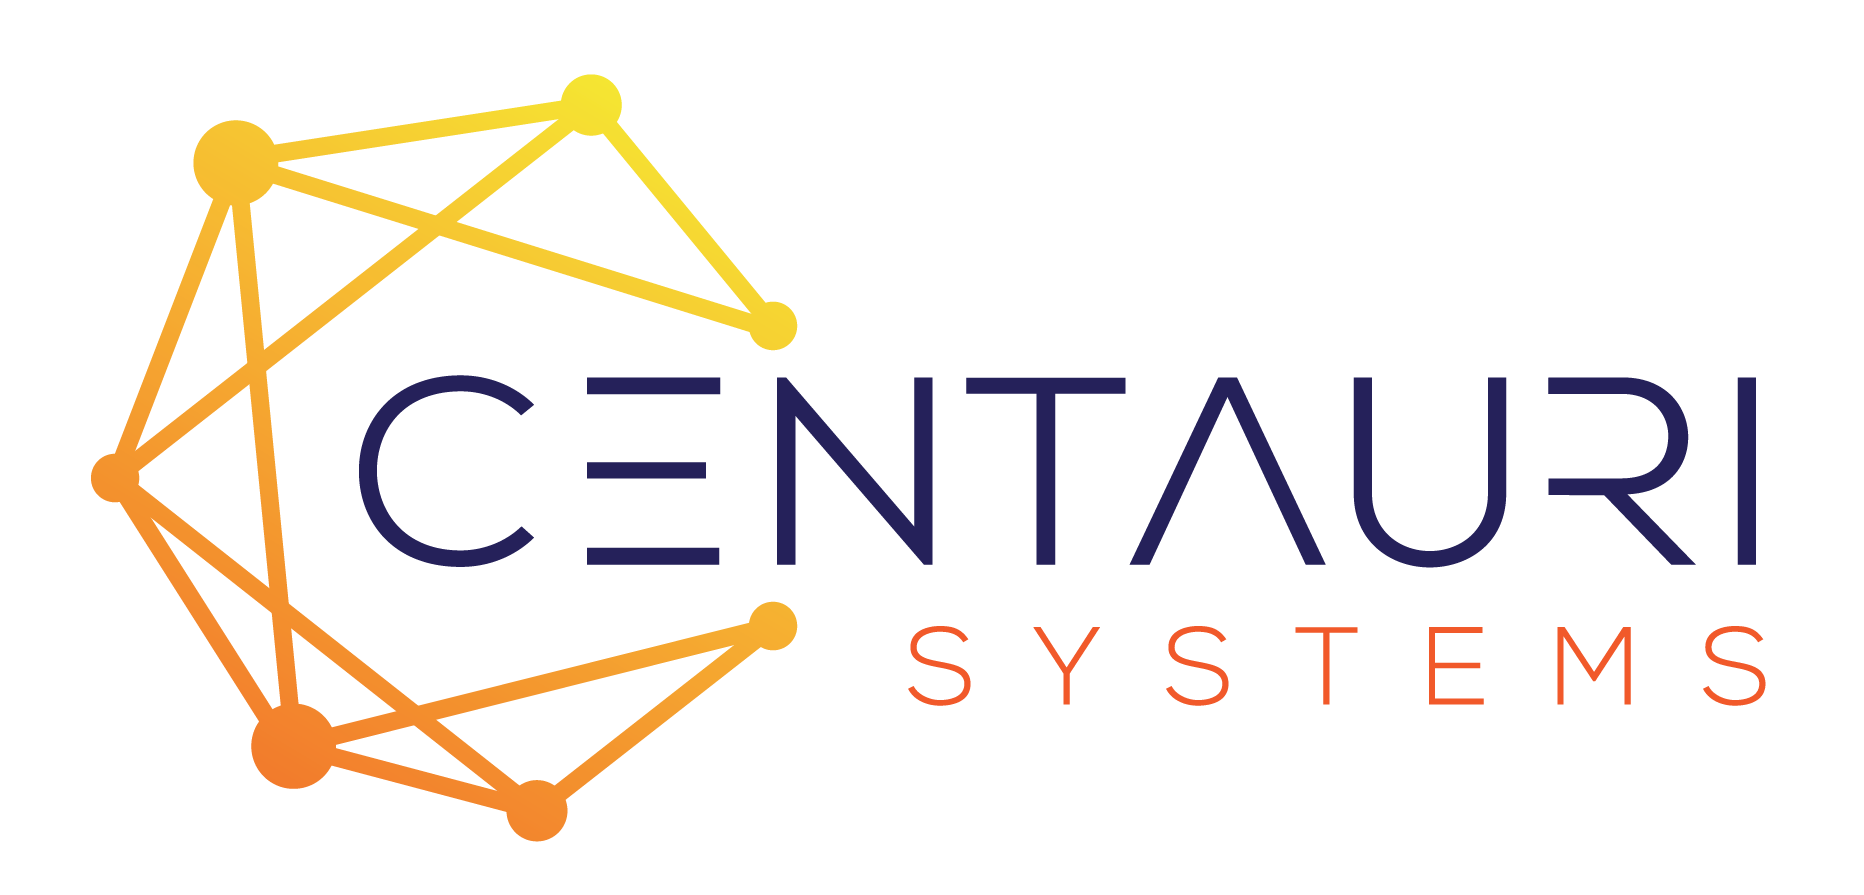 Centauri Systems LLC